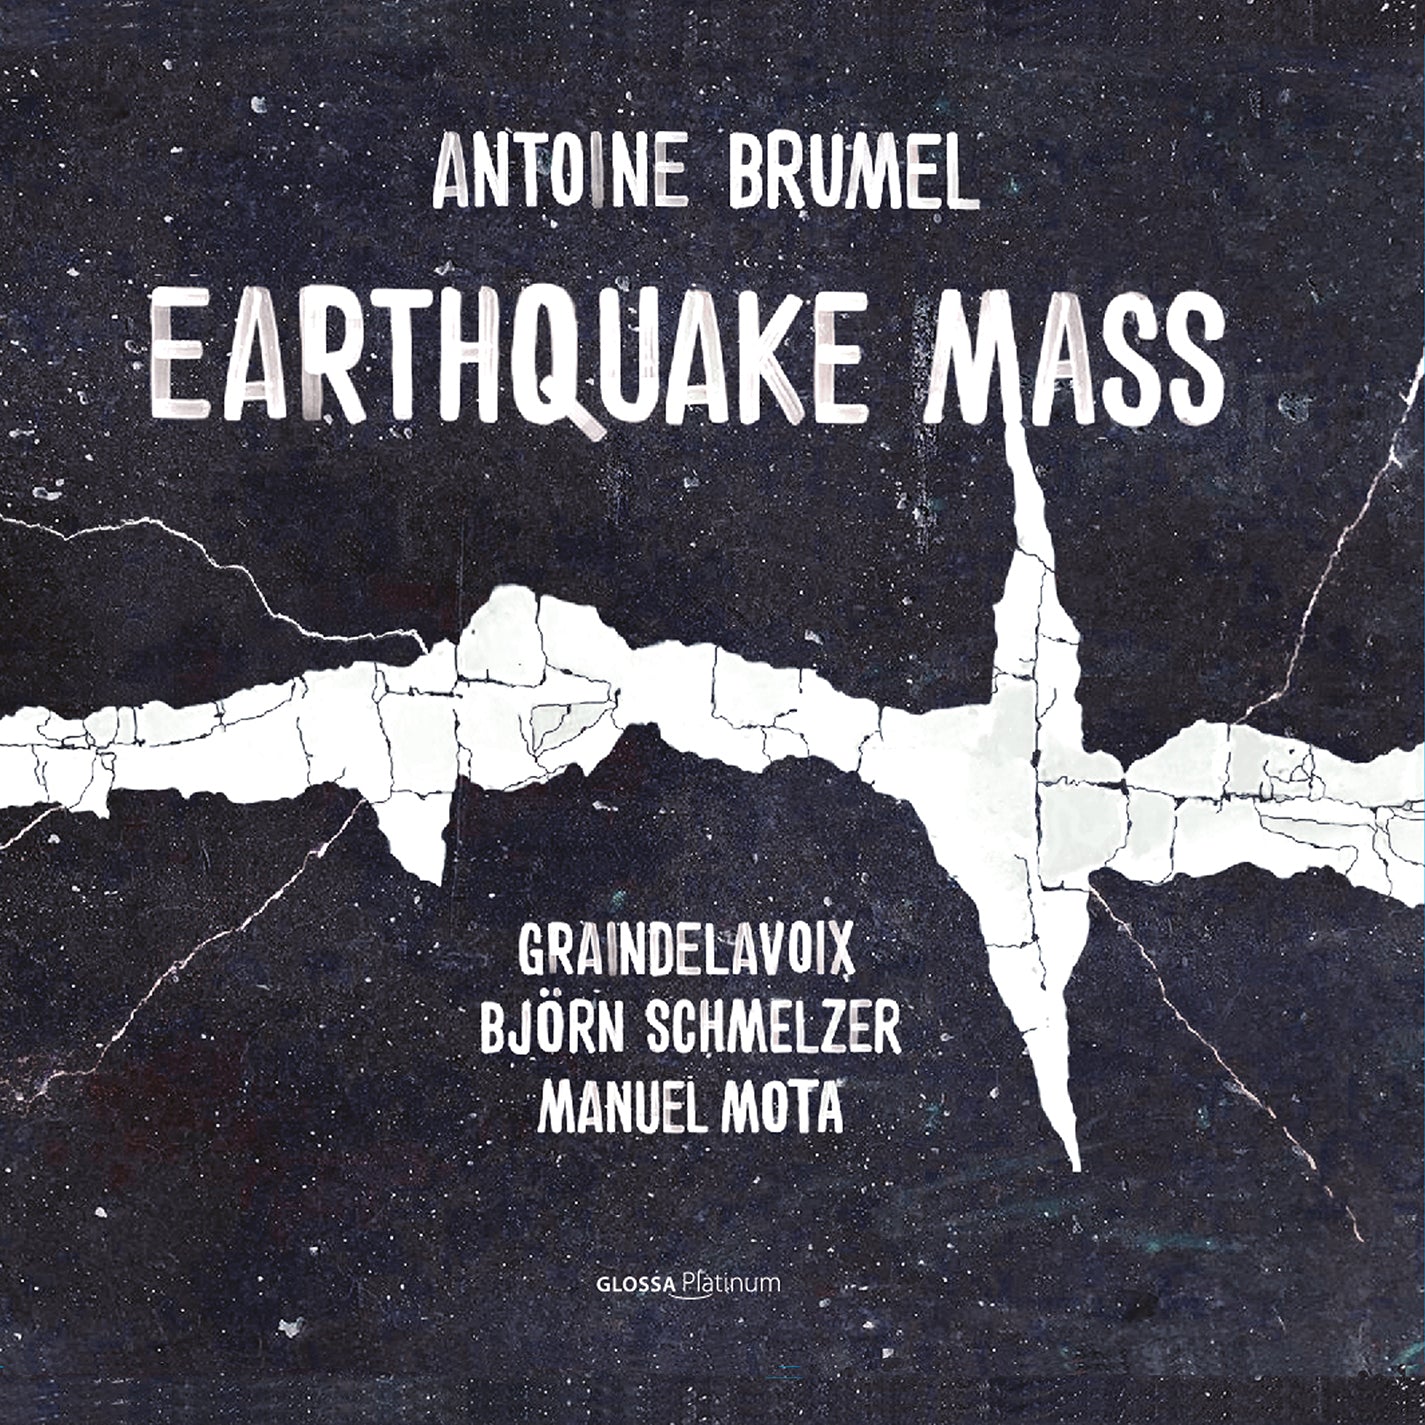 Brumel: "Earthquake" Mass c. 1500 / Schmelzer, Graindelavoix